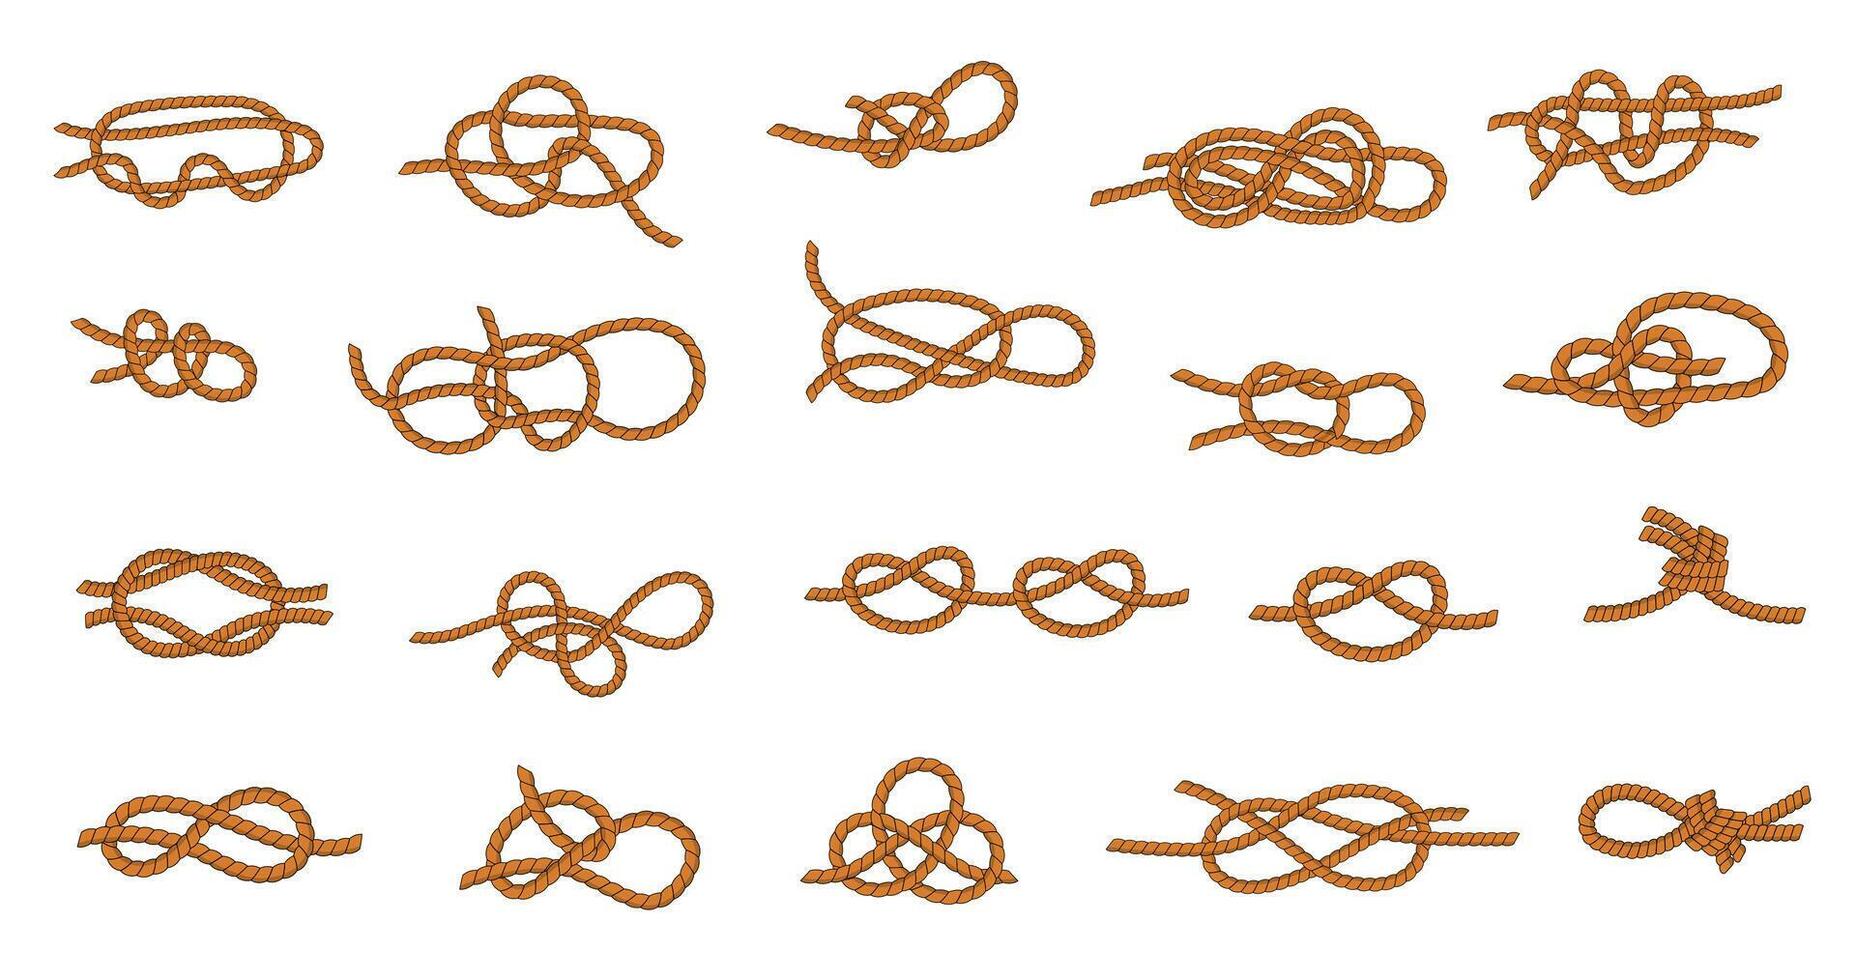 touw knoop. marinier en nautische banden en draden voor varen en het zeilen, verschillend types van koppelverkoop knopen grafisch verzameling. vector geknoopt touw reeks